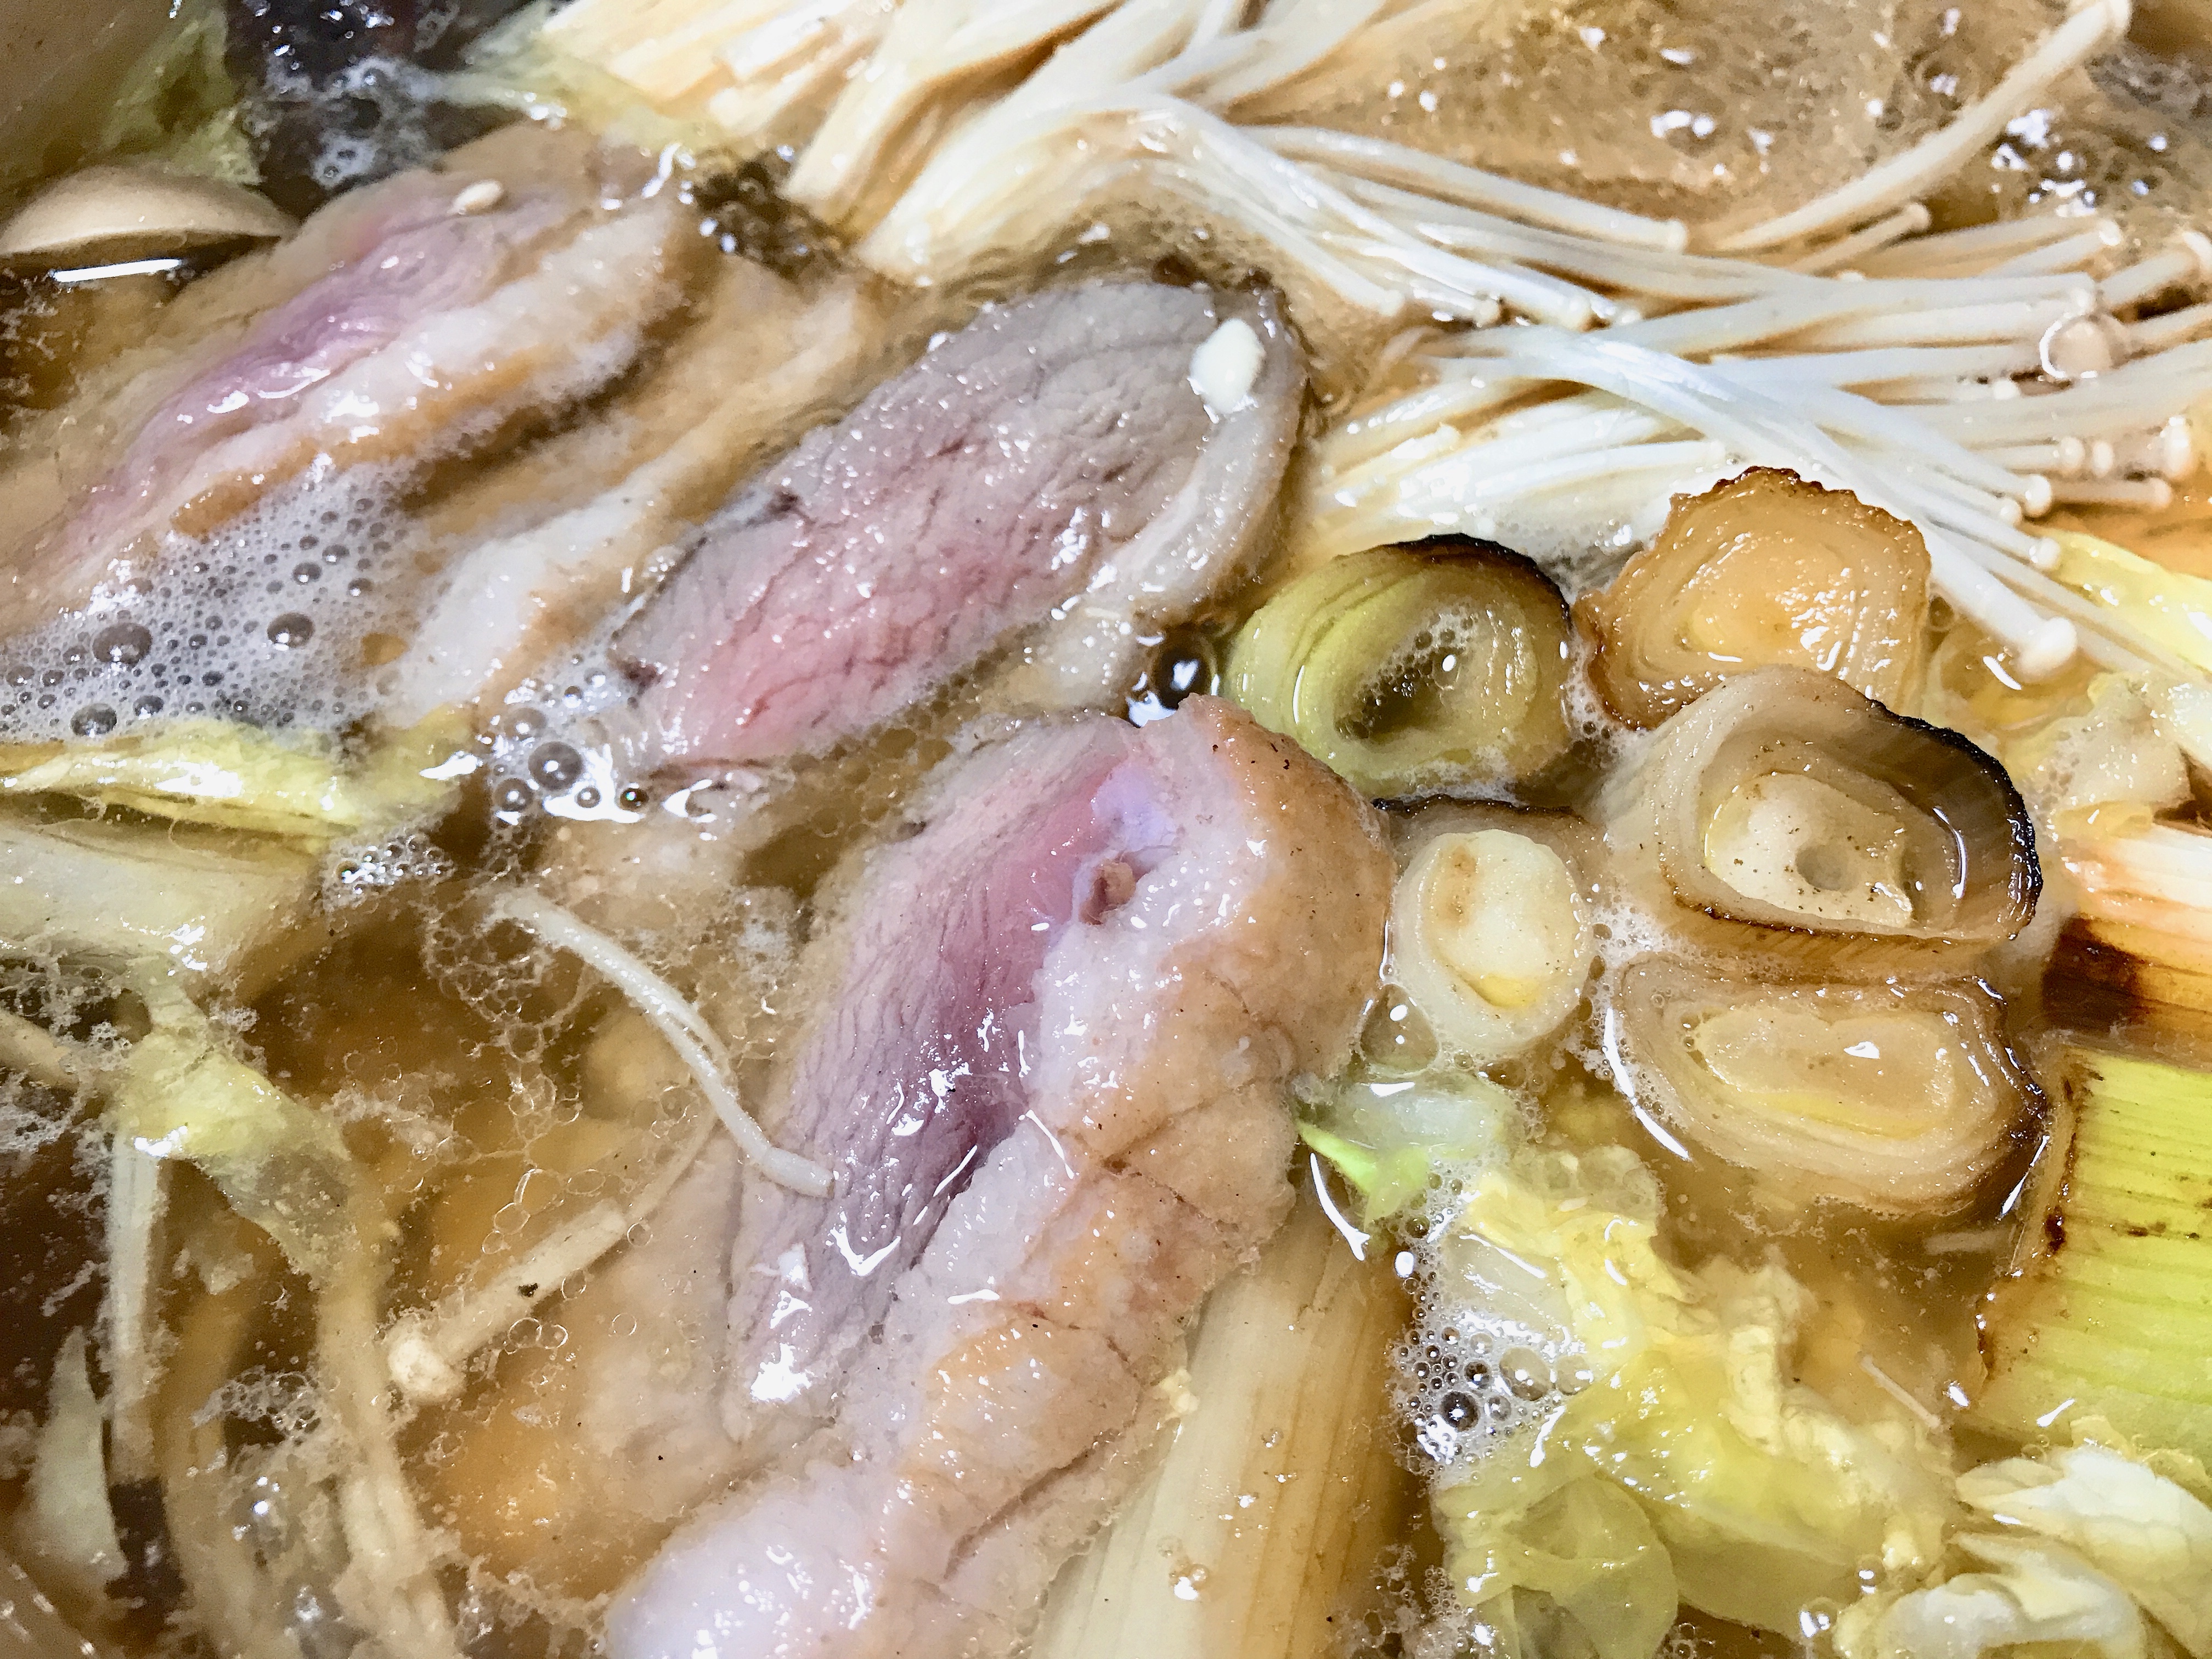 高コスパの鴨鍋のお取り寄せはグルメソムリエの「鴨なべ三昧」の鍋セットで。1kg超えの鴨肉で家族4人で満腹感を味わえた。 | まごころ365